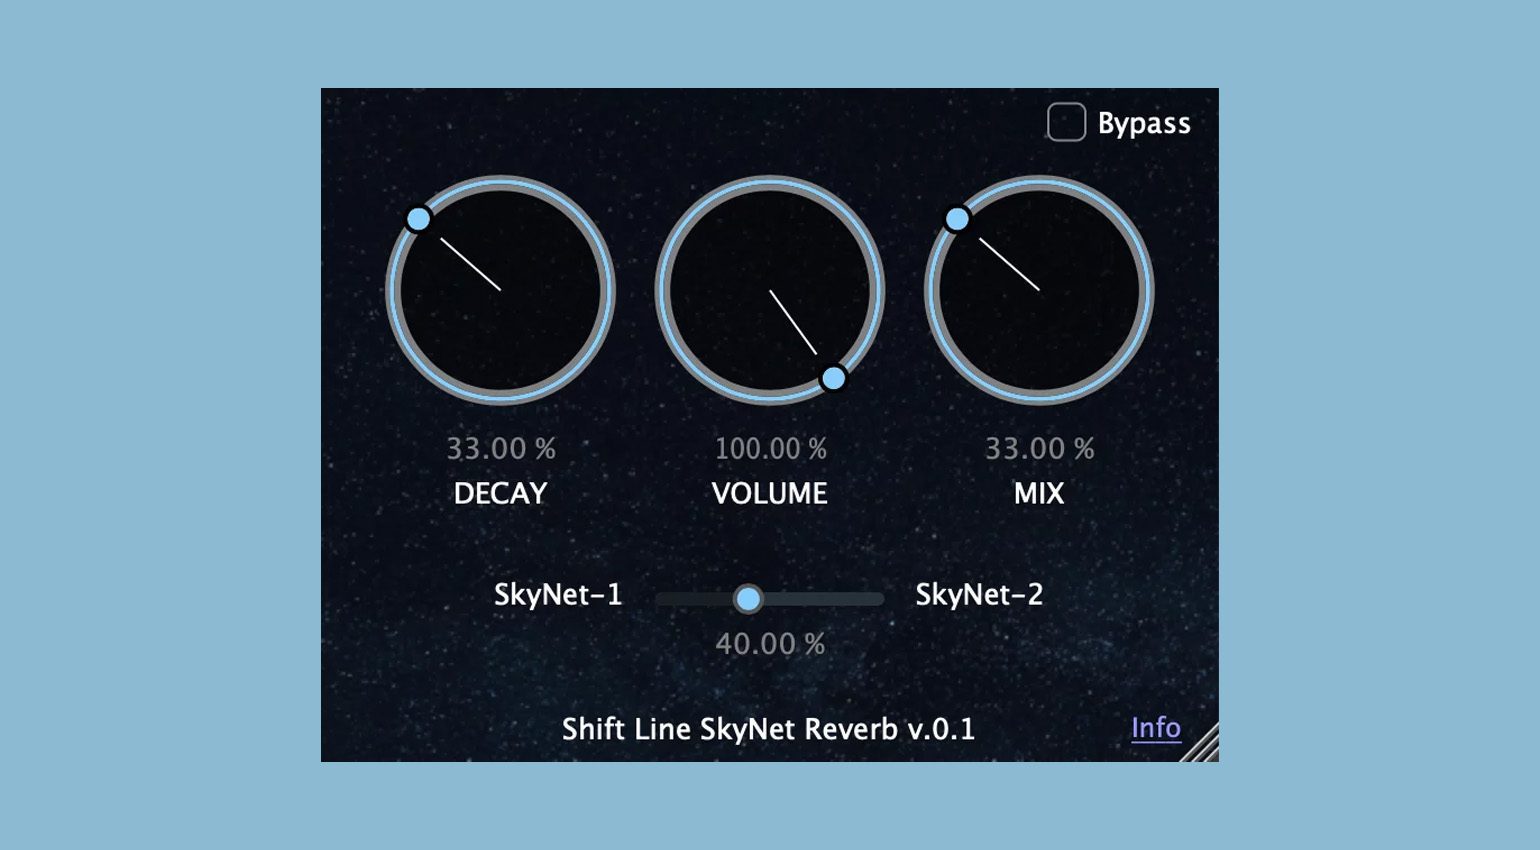 Shift Line SkyNet emuliert das Astronaut Effektpedal